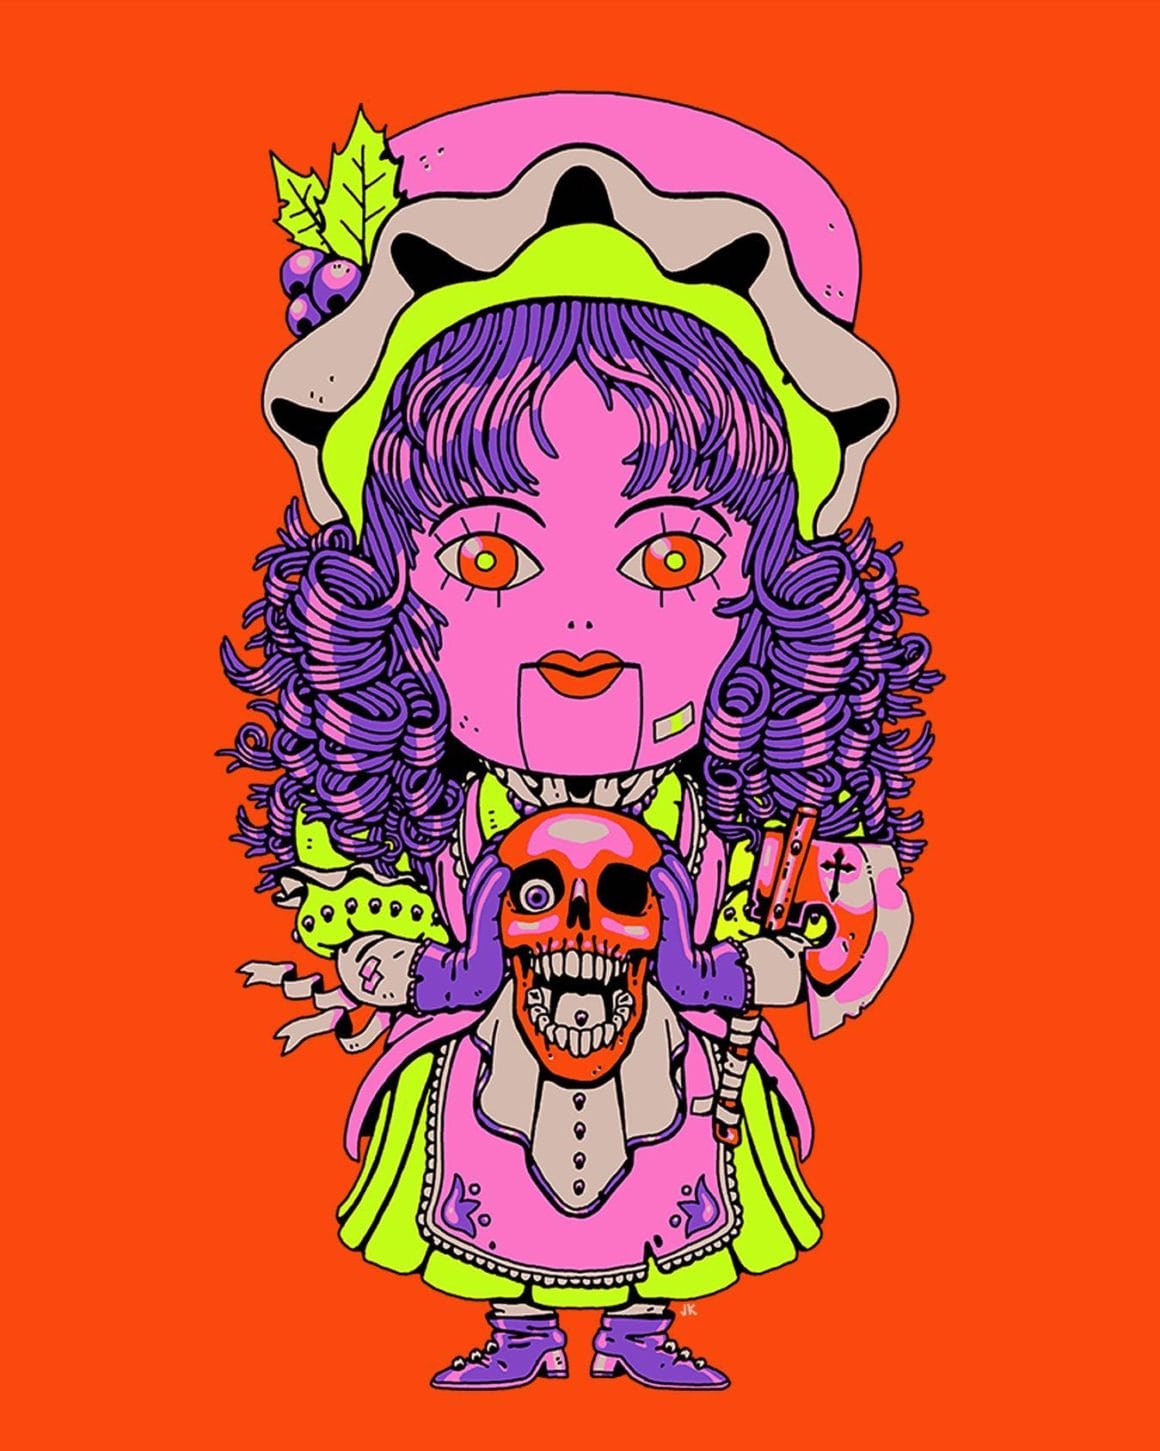 Illustration style manga représentant une dame toute petite avec la peau rose, les cheveux violets en anglaise, ainsi que la bouche et les yeux rouges. Elle tient entre ses mains un crâne lui aussi rouge